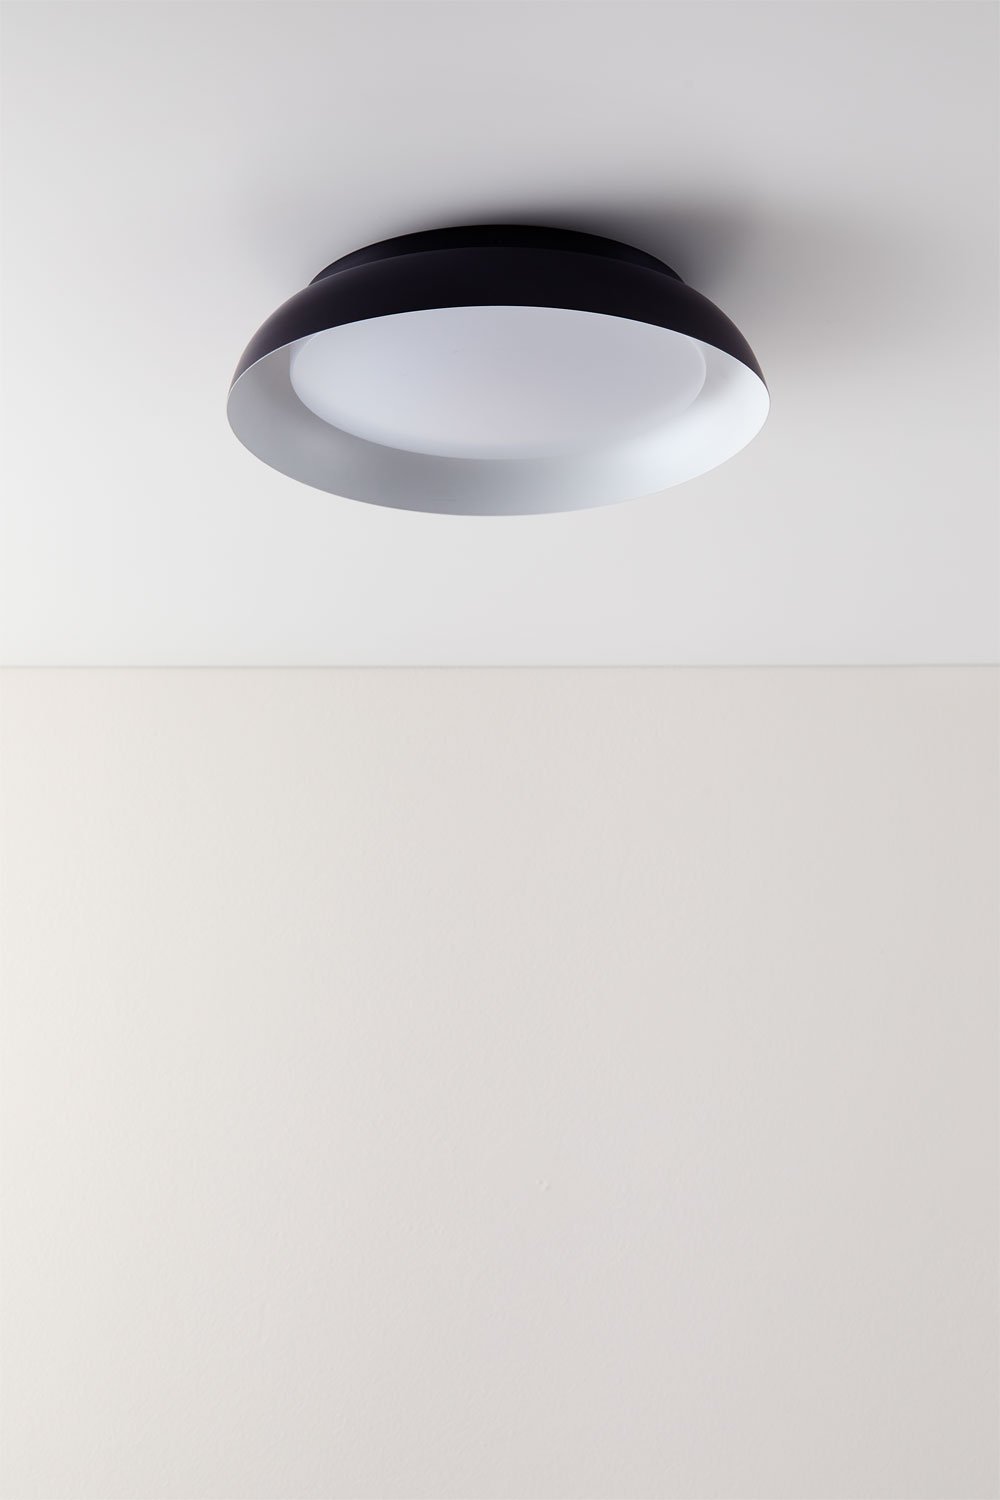 LED-plafondlamp van Azanuy-staal, galerij beeld 1